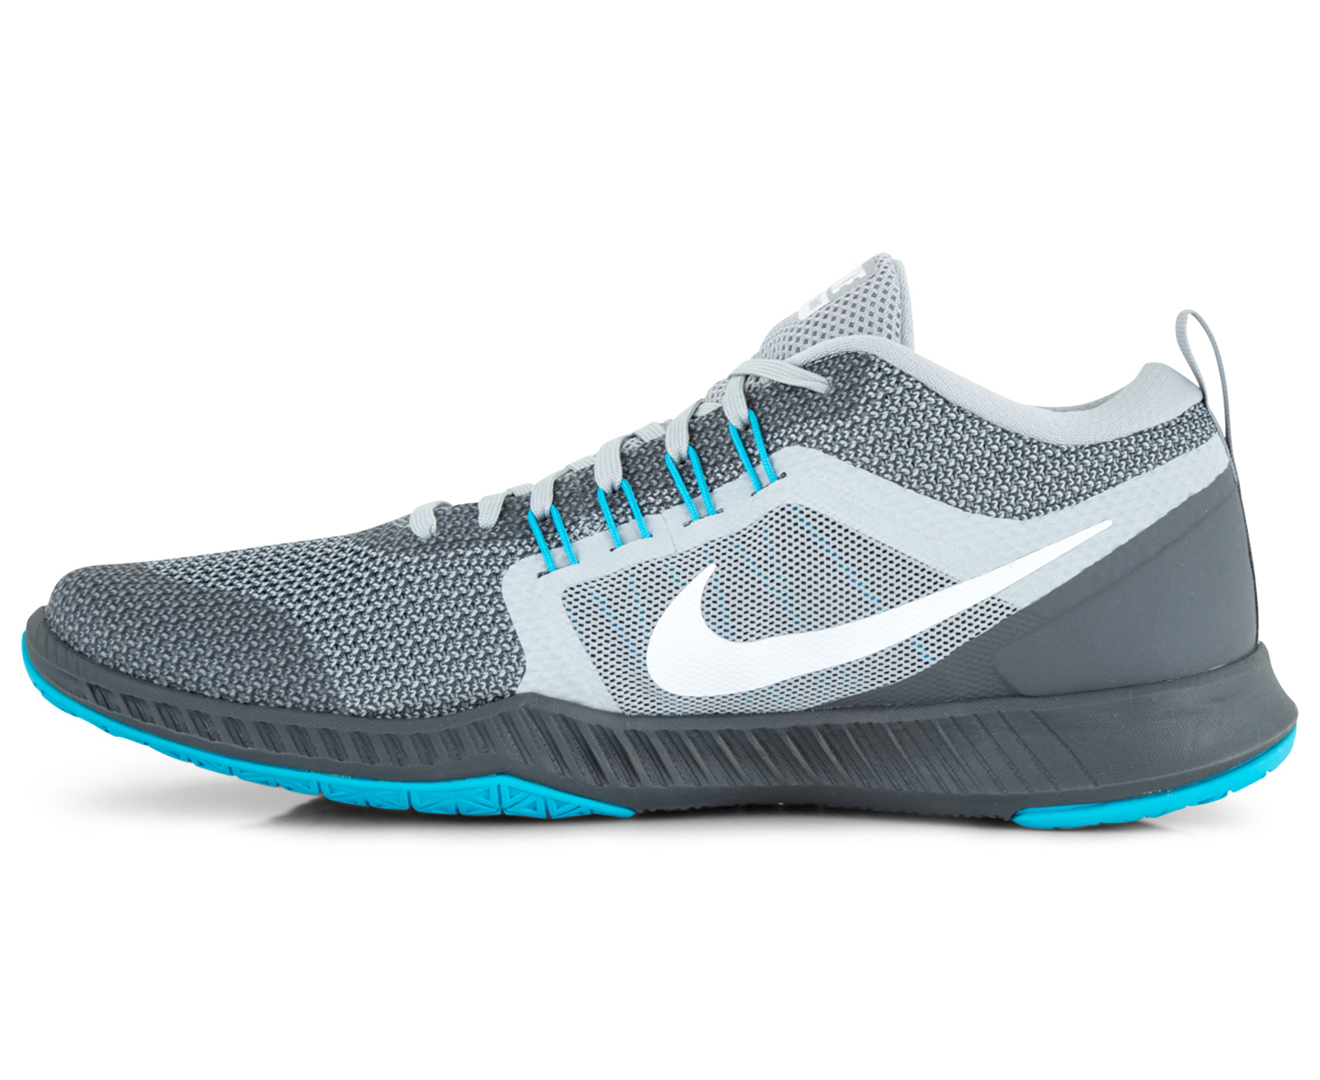 Nike Men's Zoom Domination TR Shoe - Wolf Grey/White-Dark Grey | Catch ...